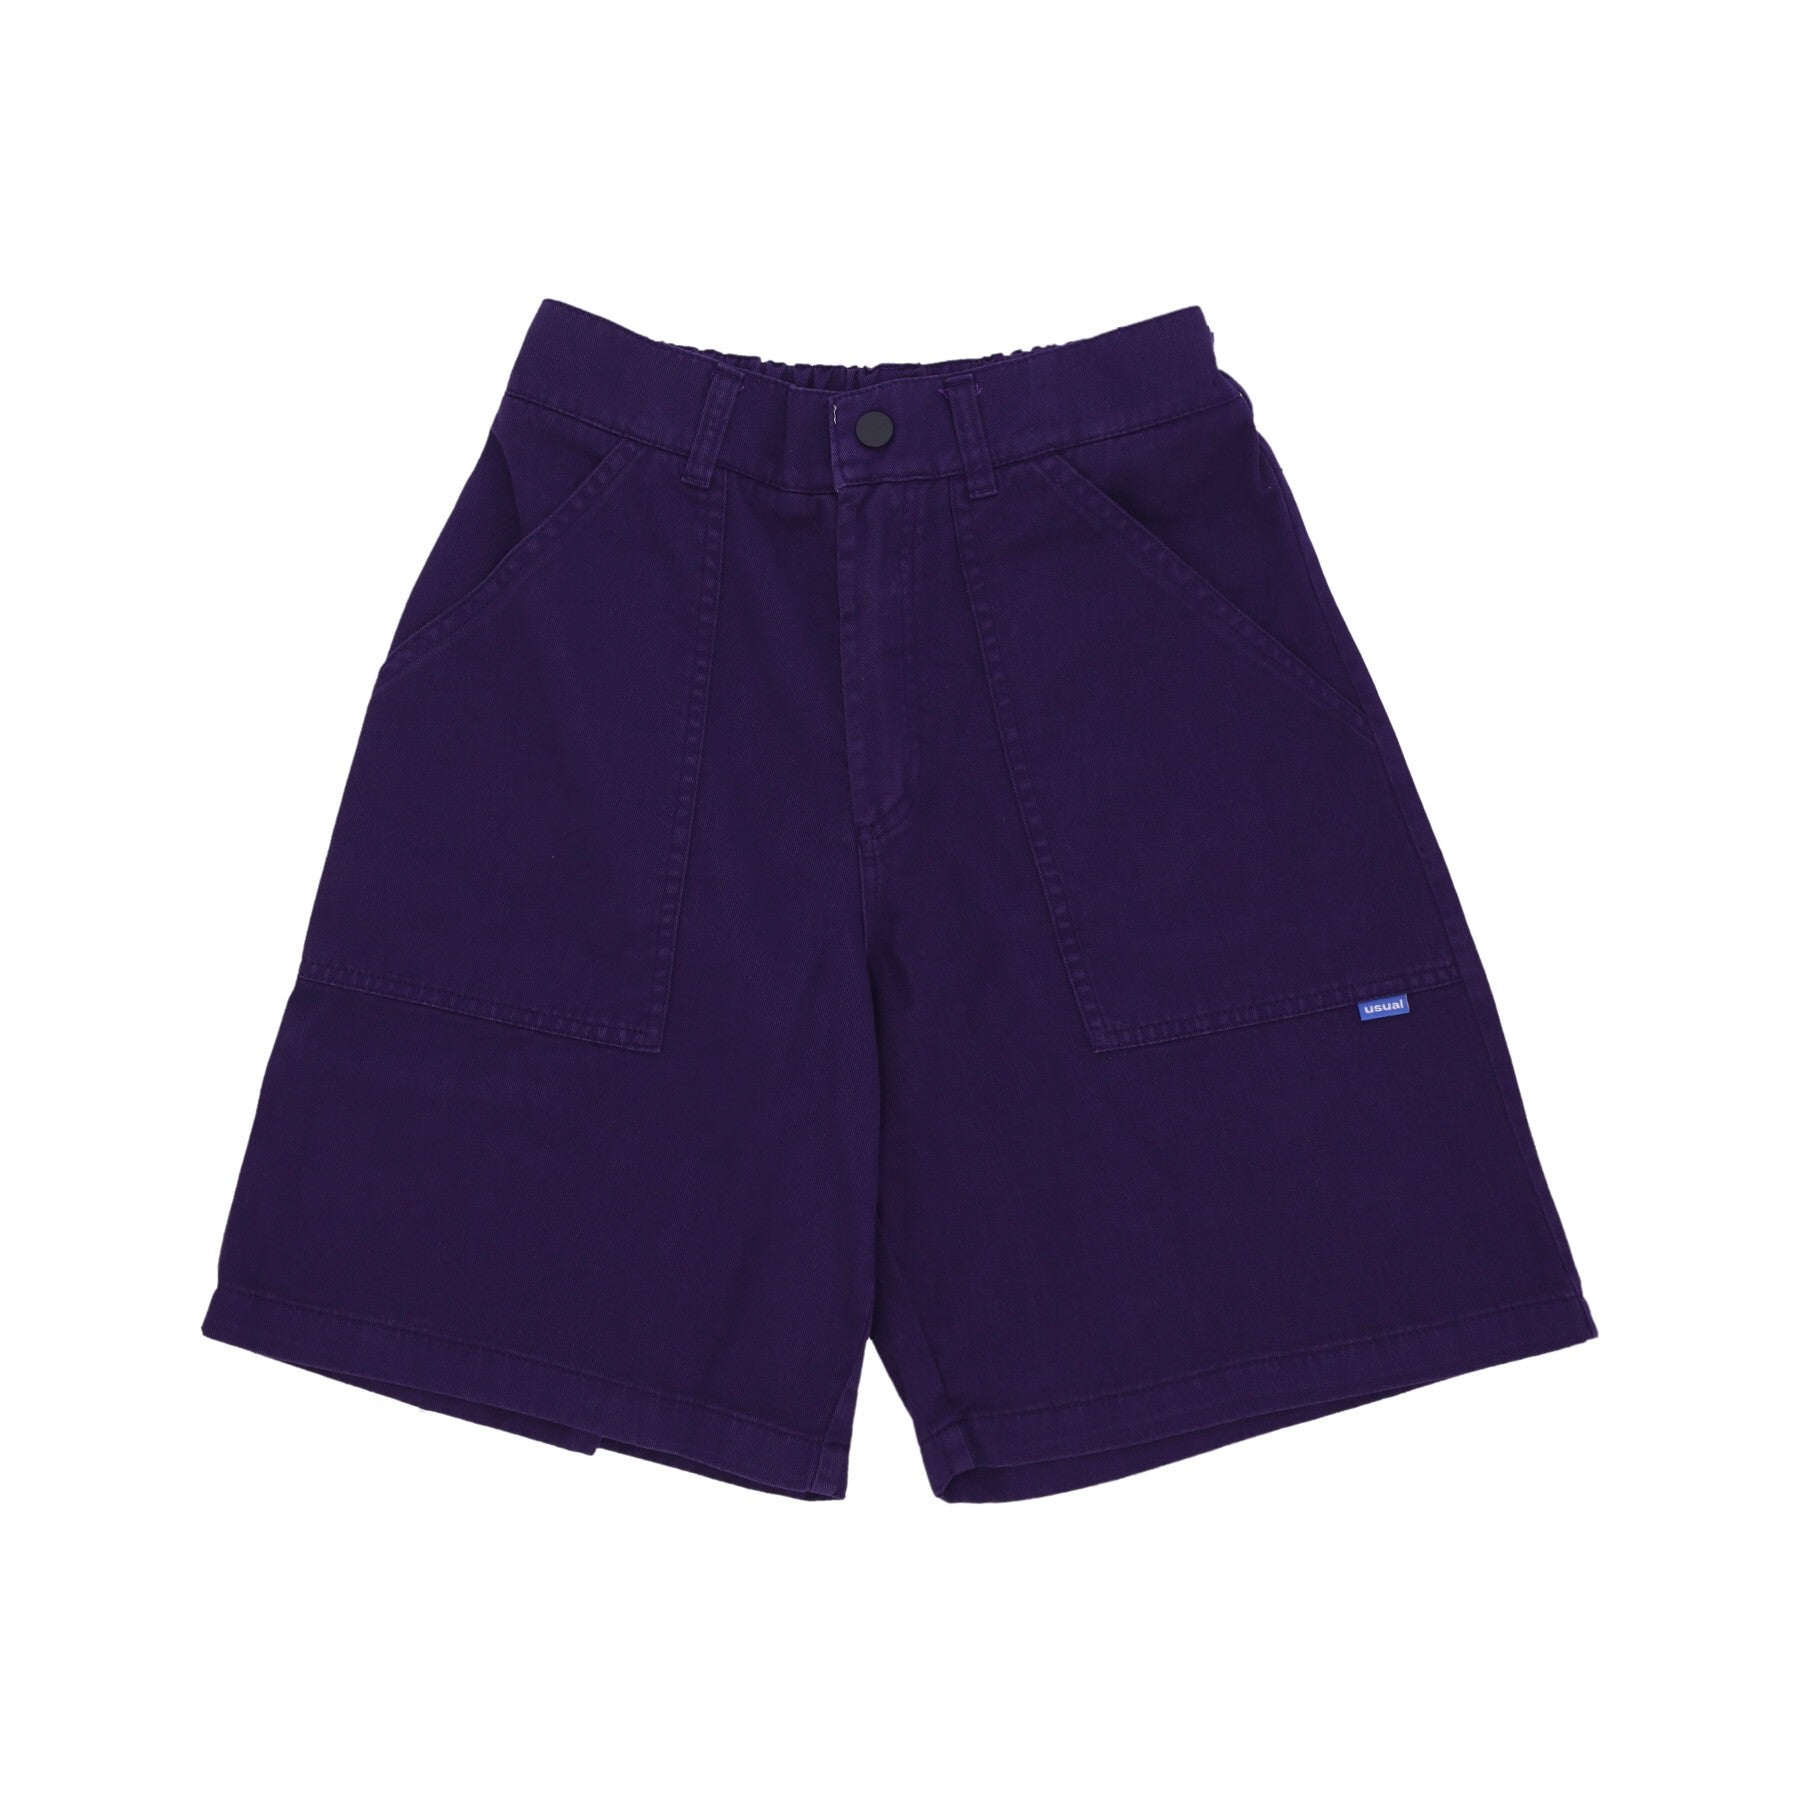 Usual, Pantalone Corto Uomo Buffer Shorts, Purple